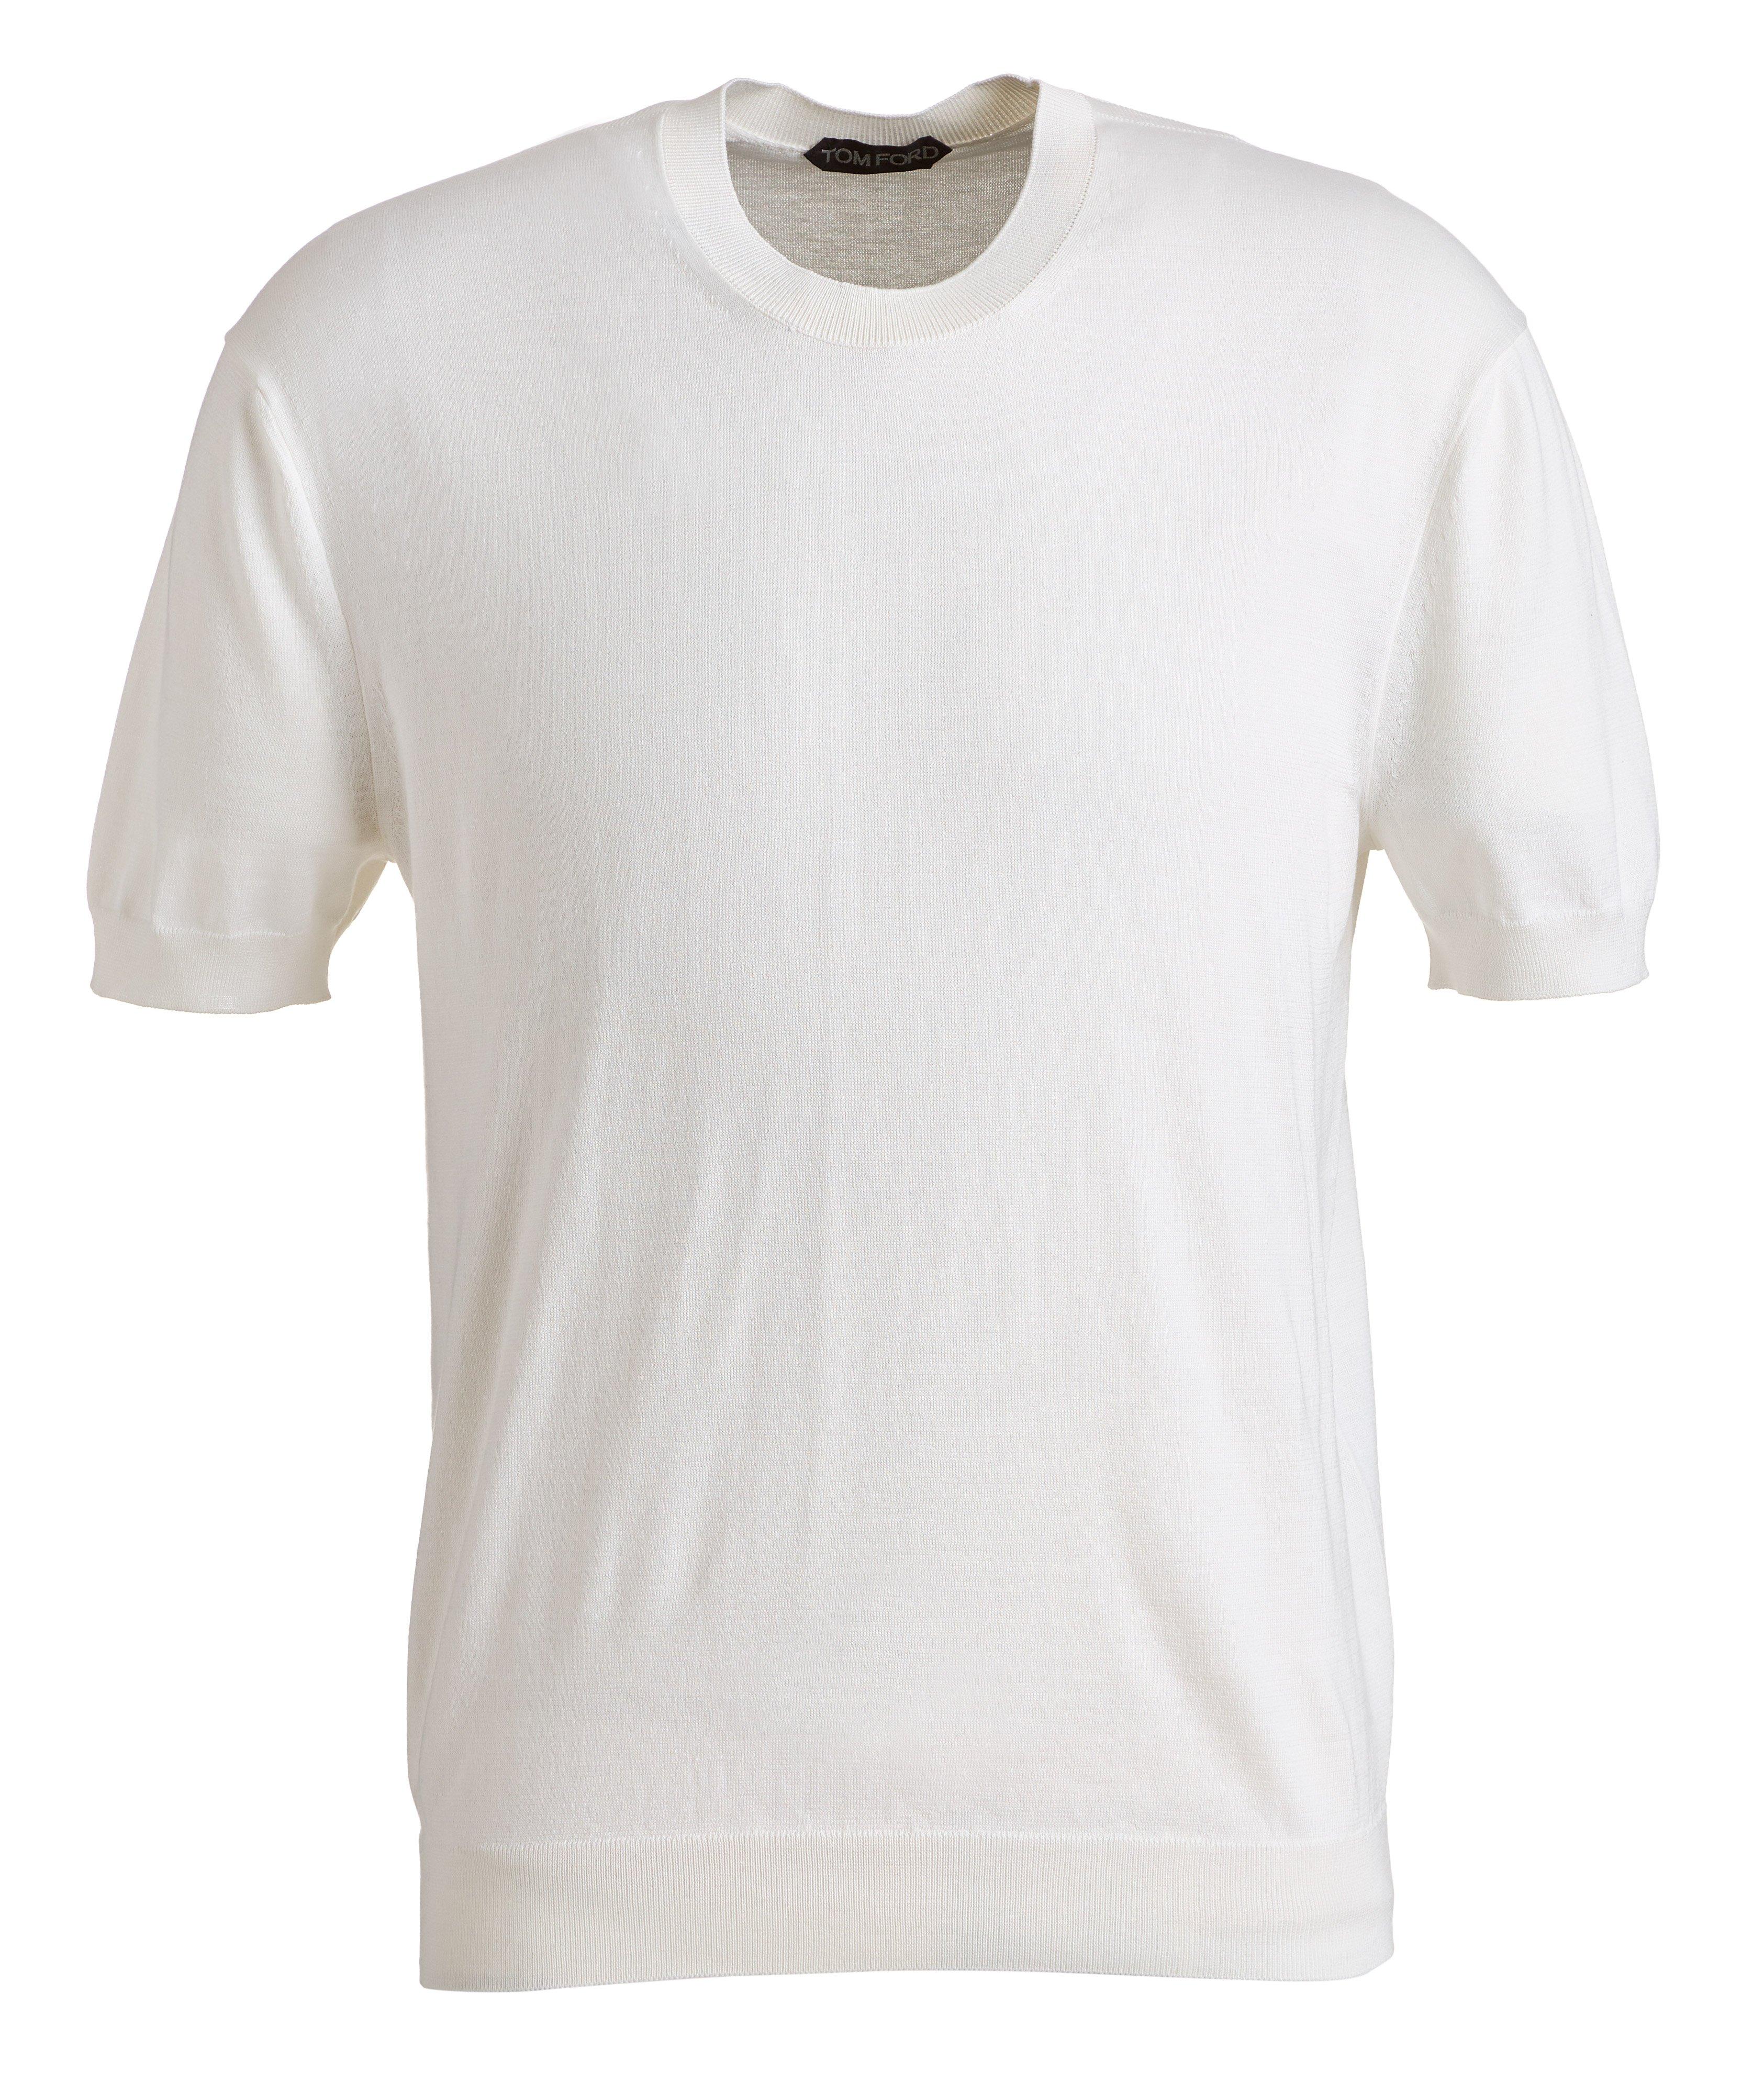 T-shirt en tricot de soie et coton image 0